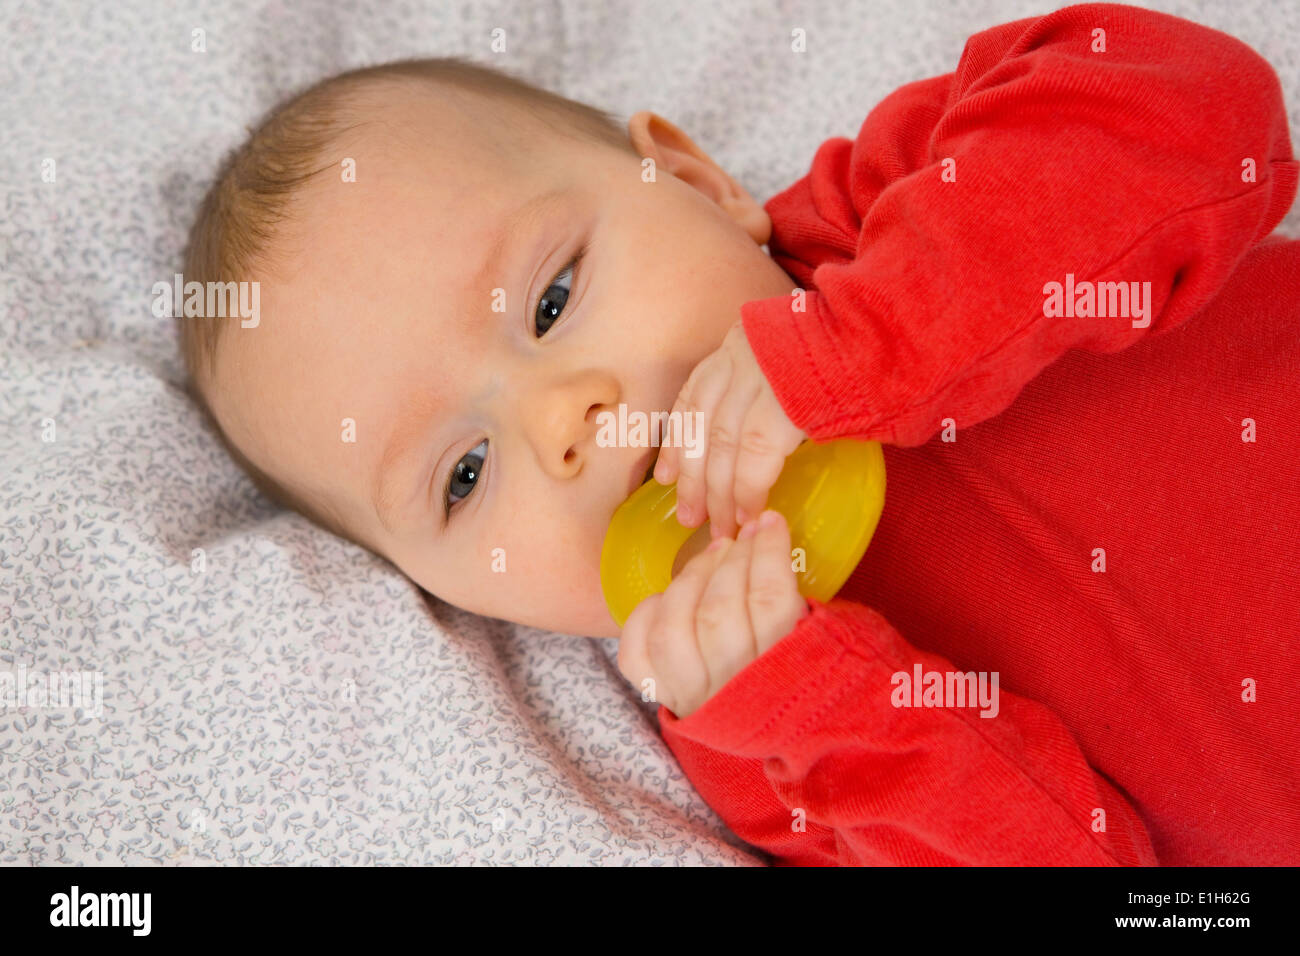 Bébé de 7 mois fille en crèche avec anneau de dentition dans sa bouche Banque D'Images